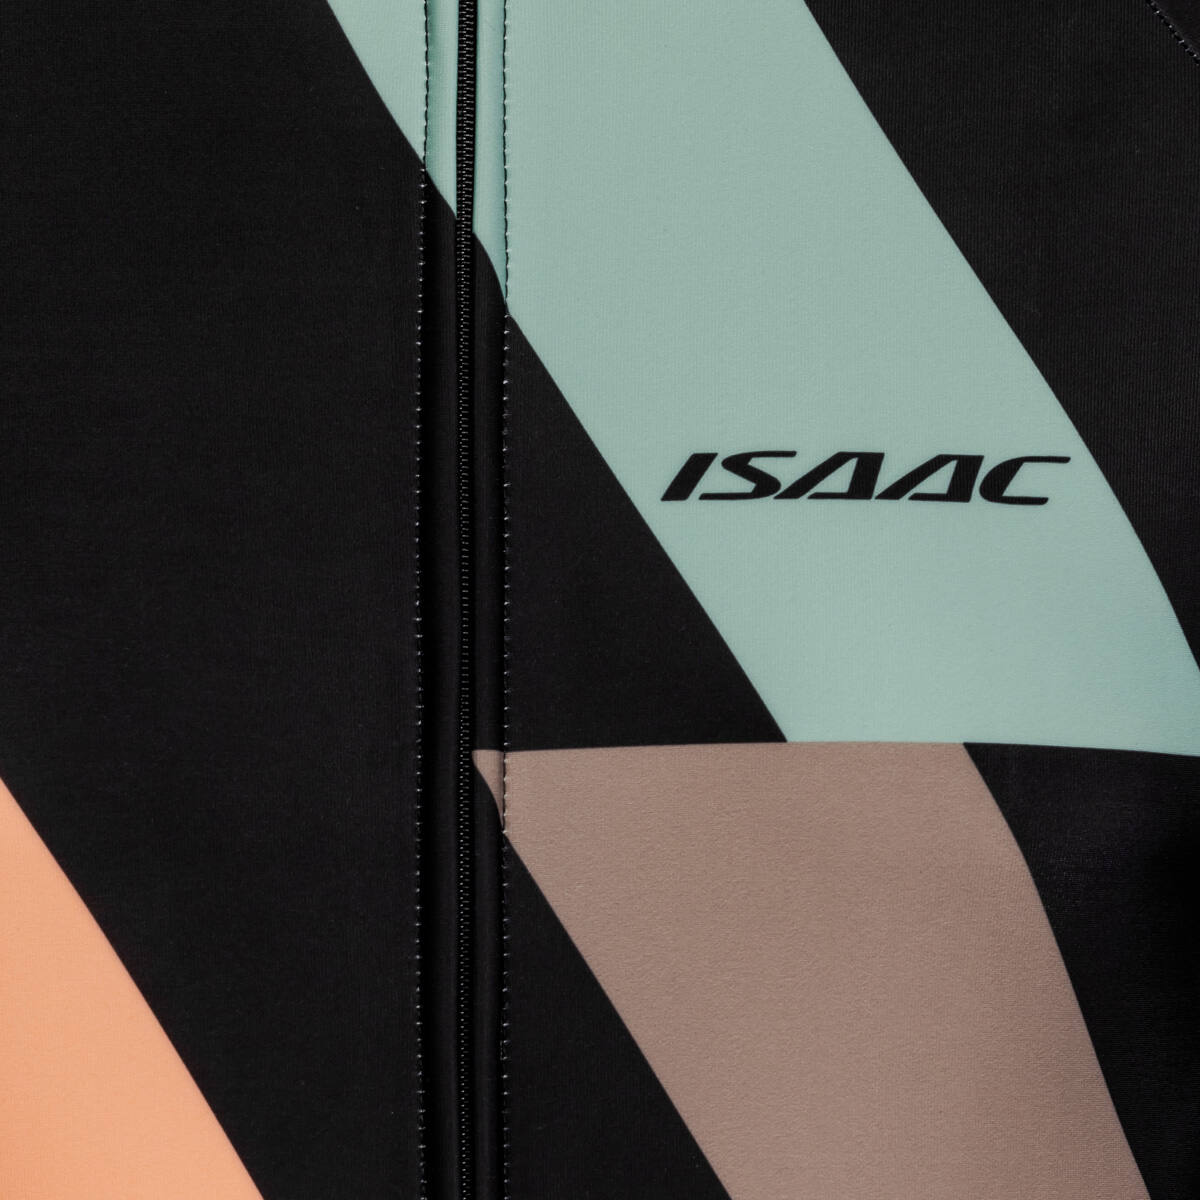 Isaac - Jacket Teamwear maat XS